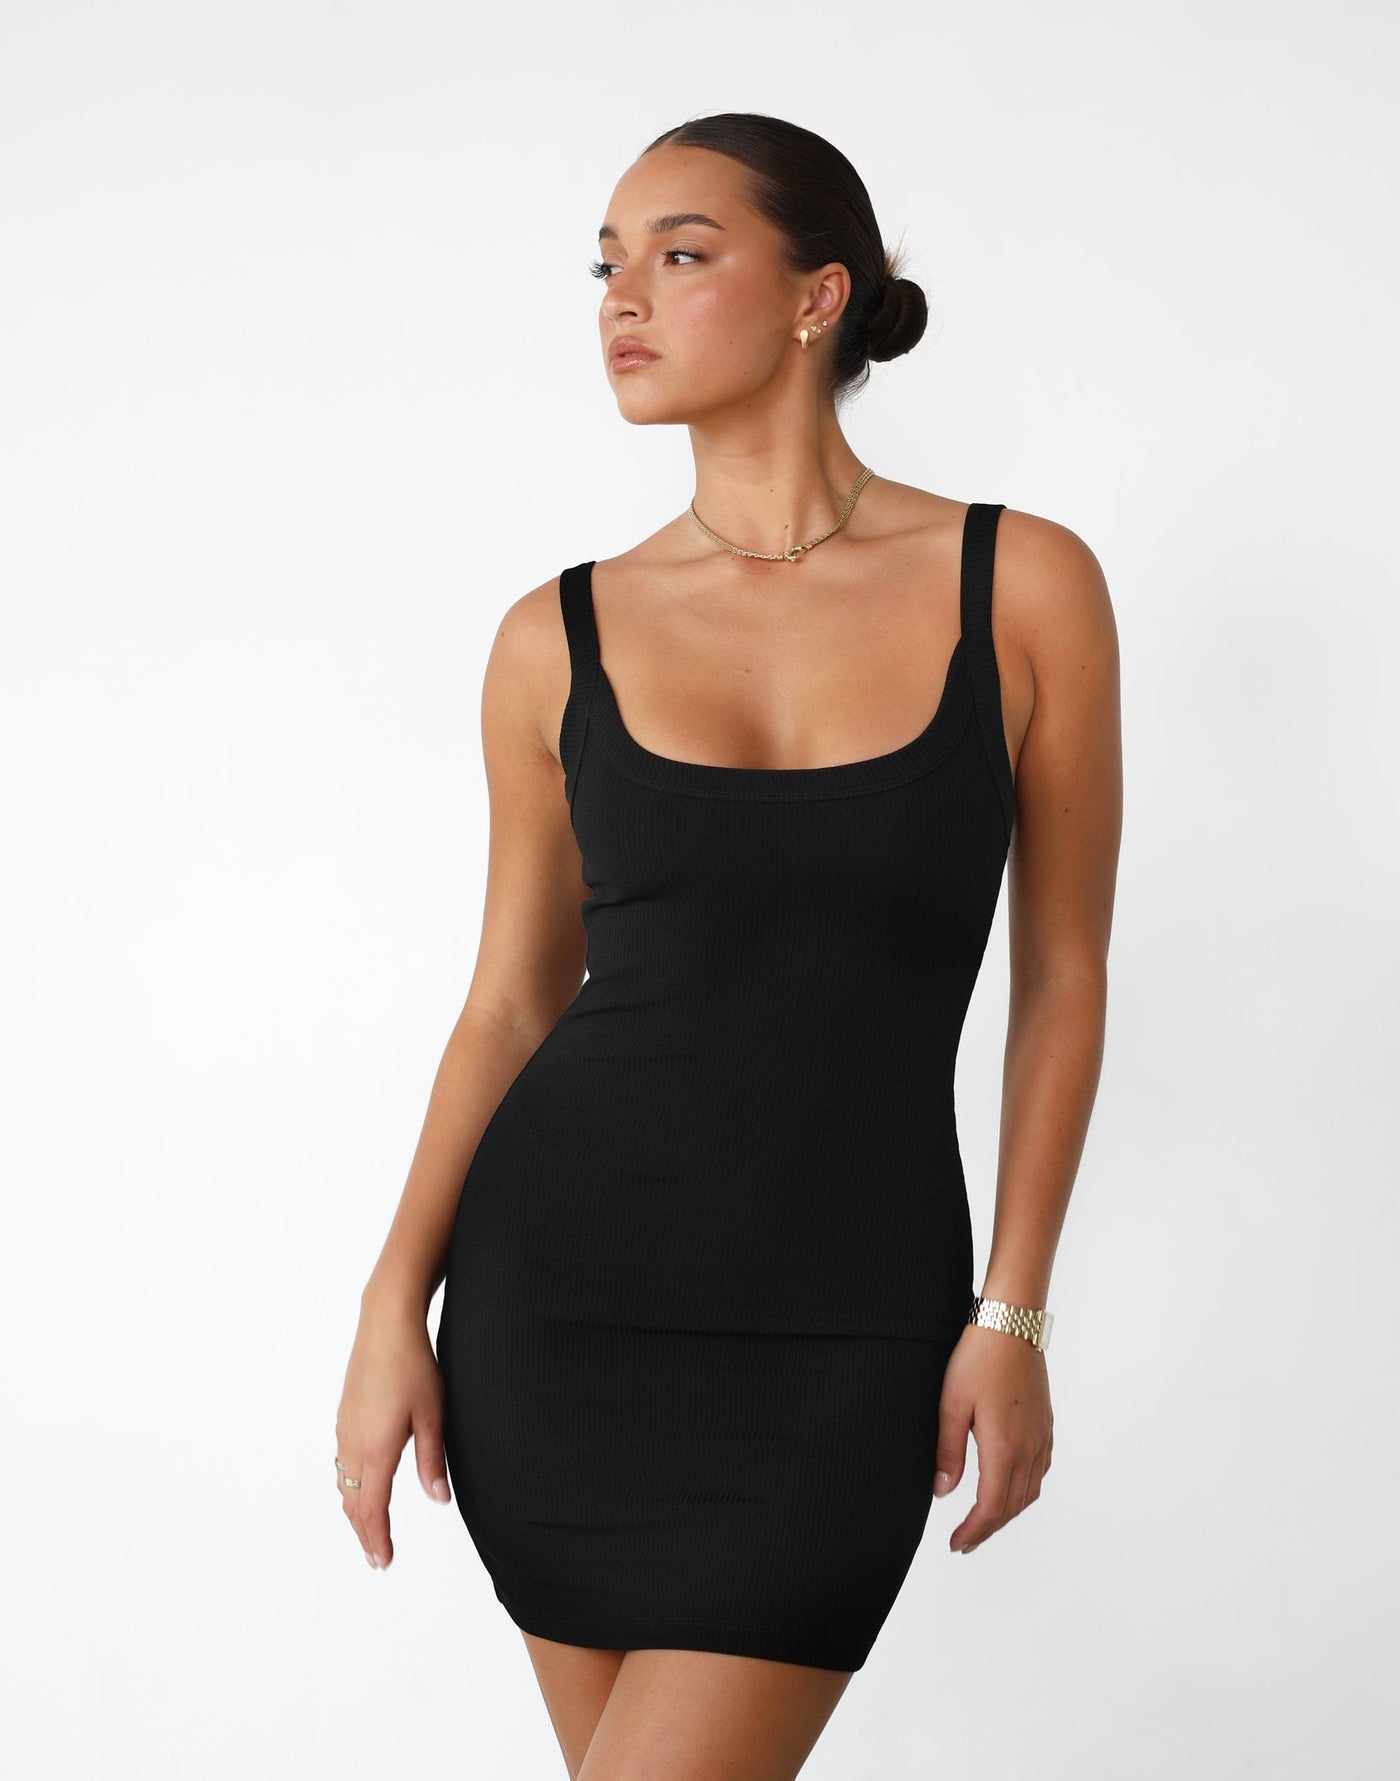 Skyler Mini Dress (Black) - Ribbed Tank Style Mini Dress - Women's Dress - Charcoal Clothing